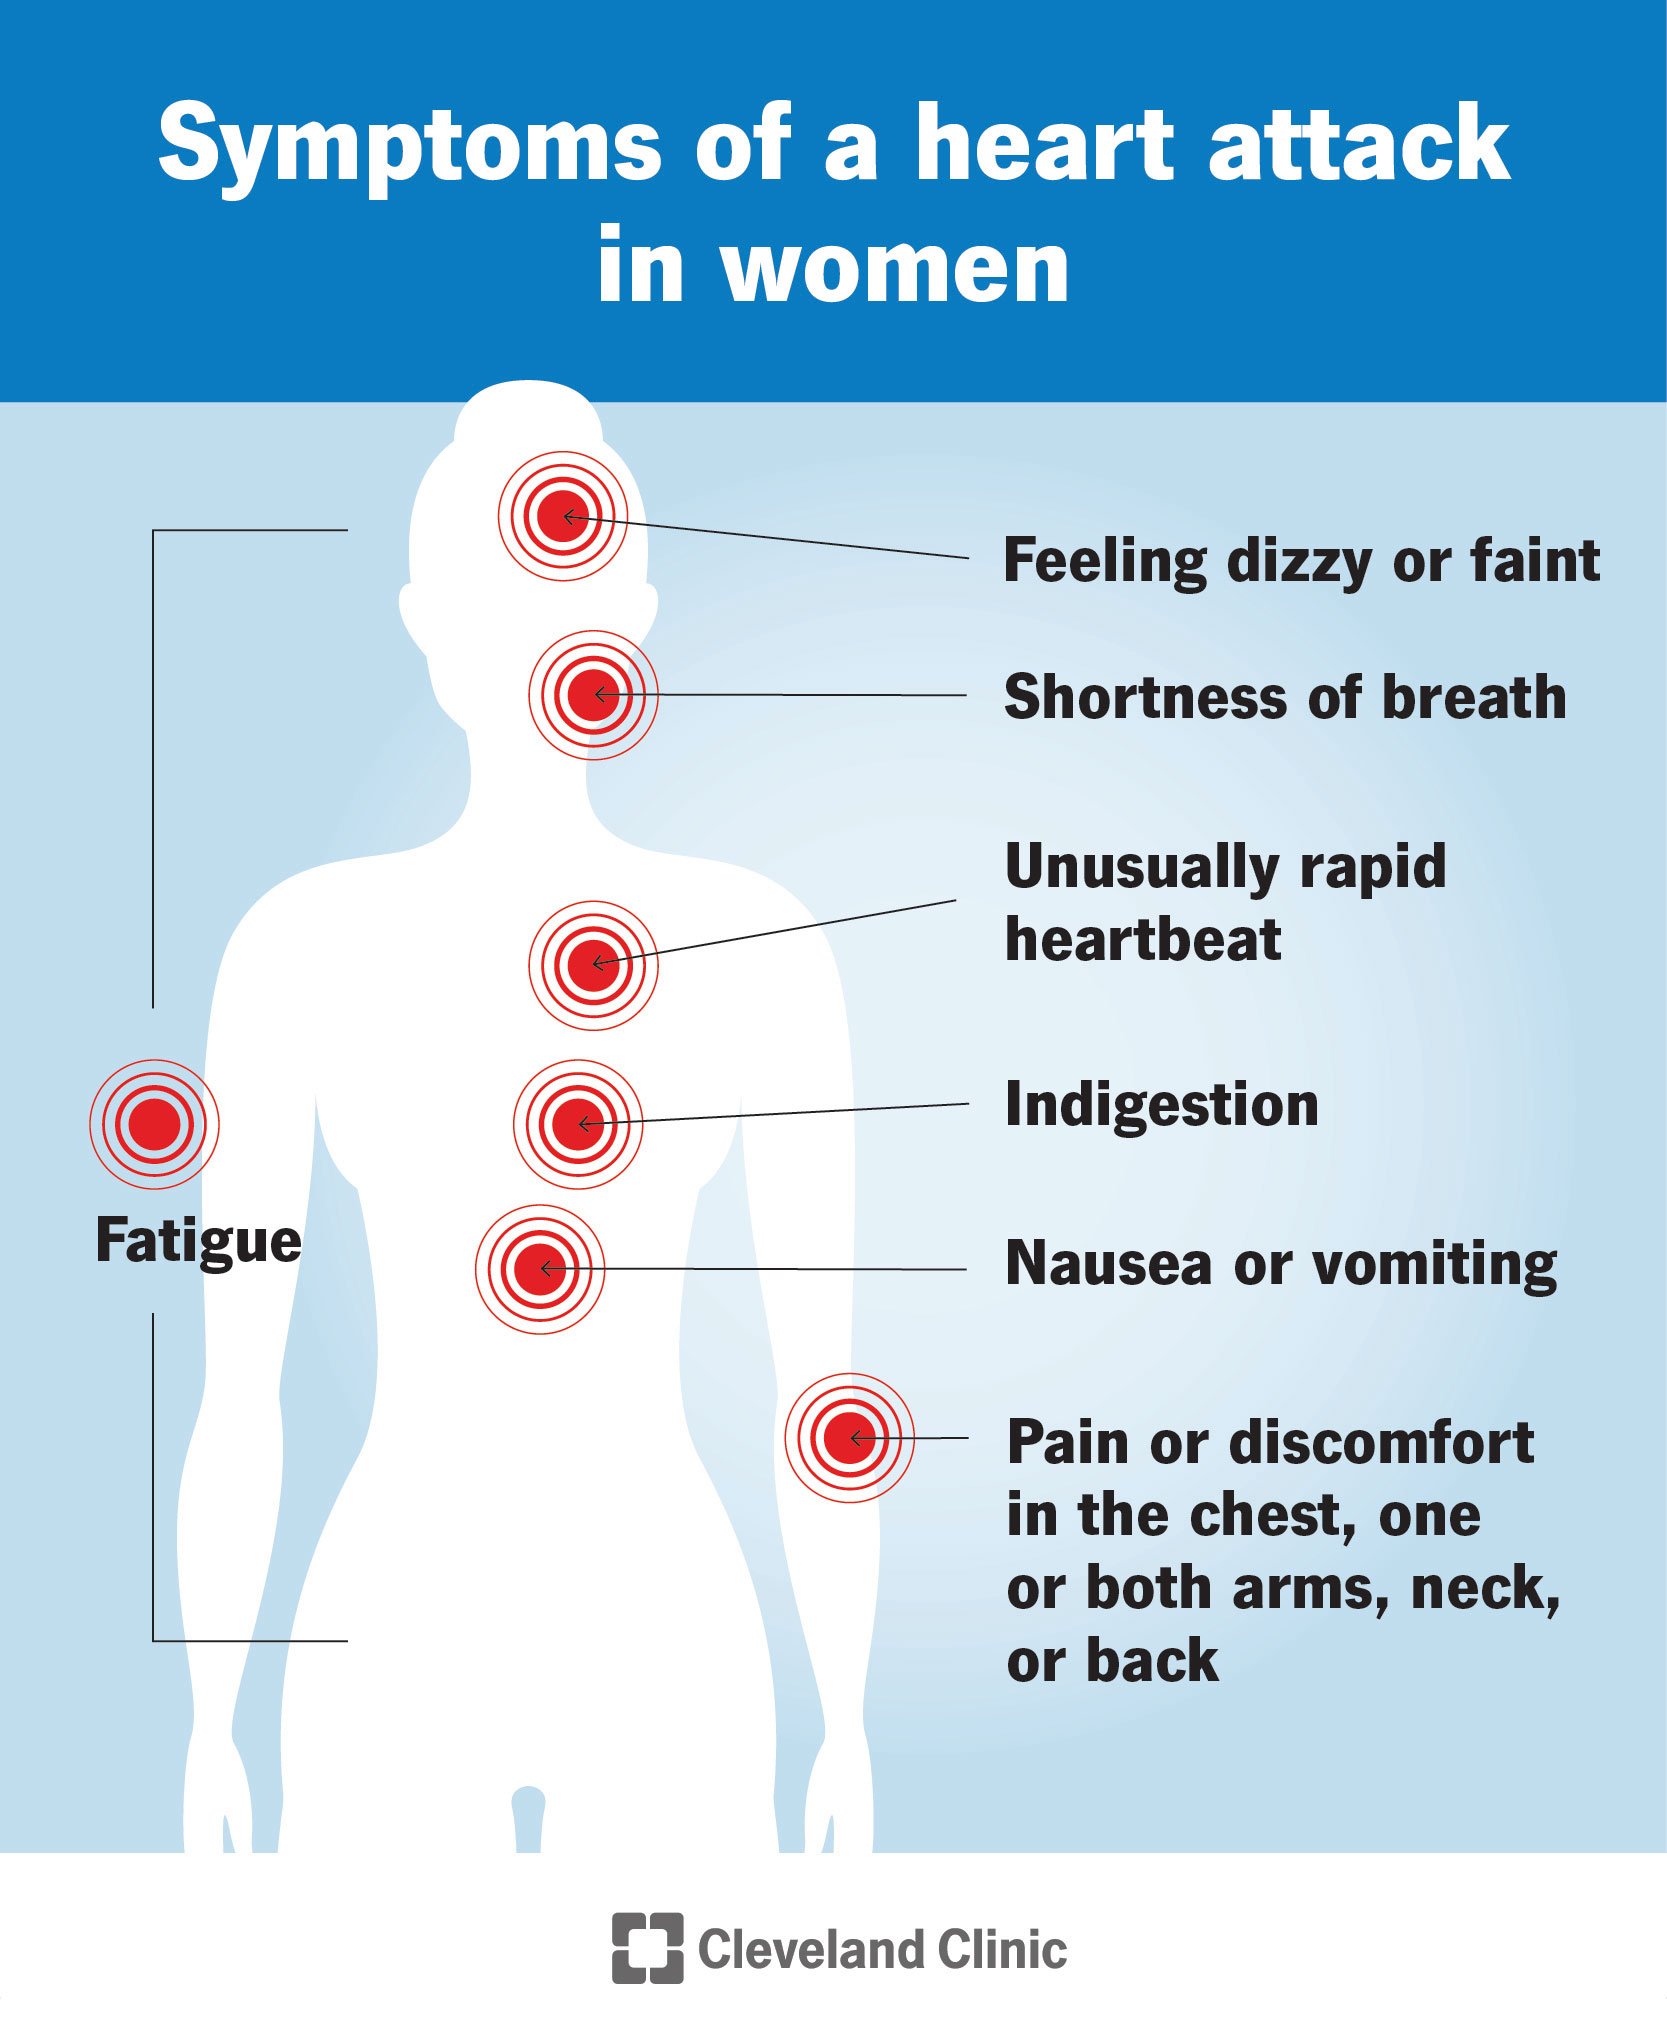 女性心脏病发作的症状包括恶心、疲劳、心跳加快等。